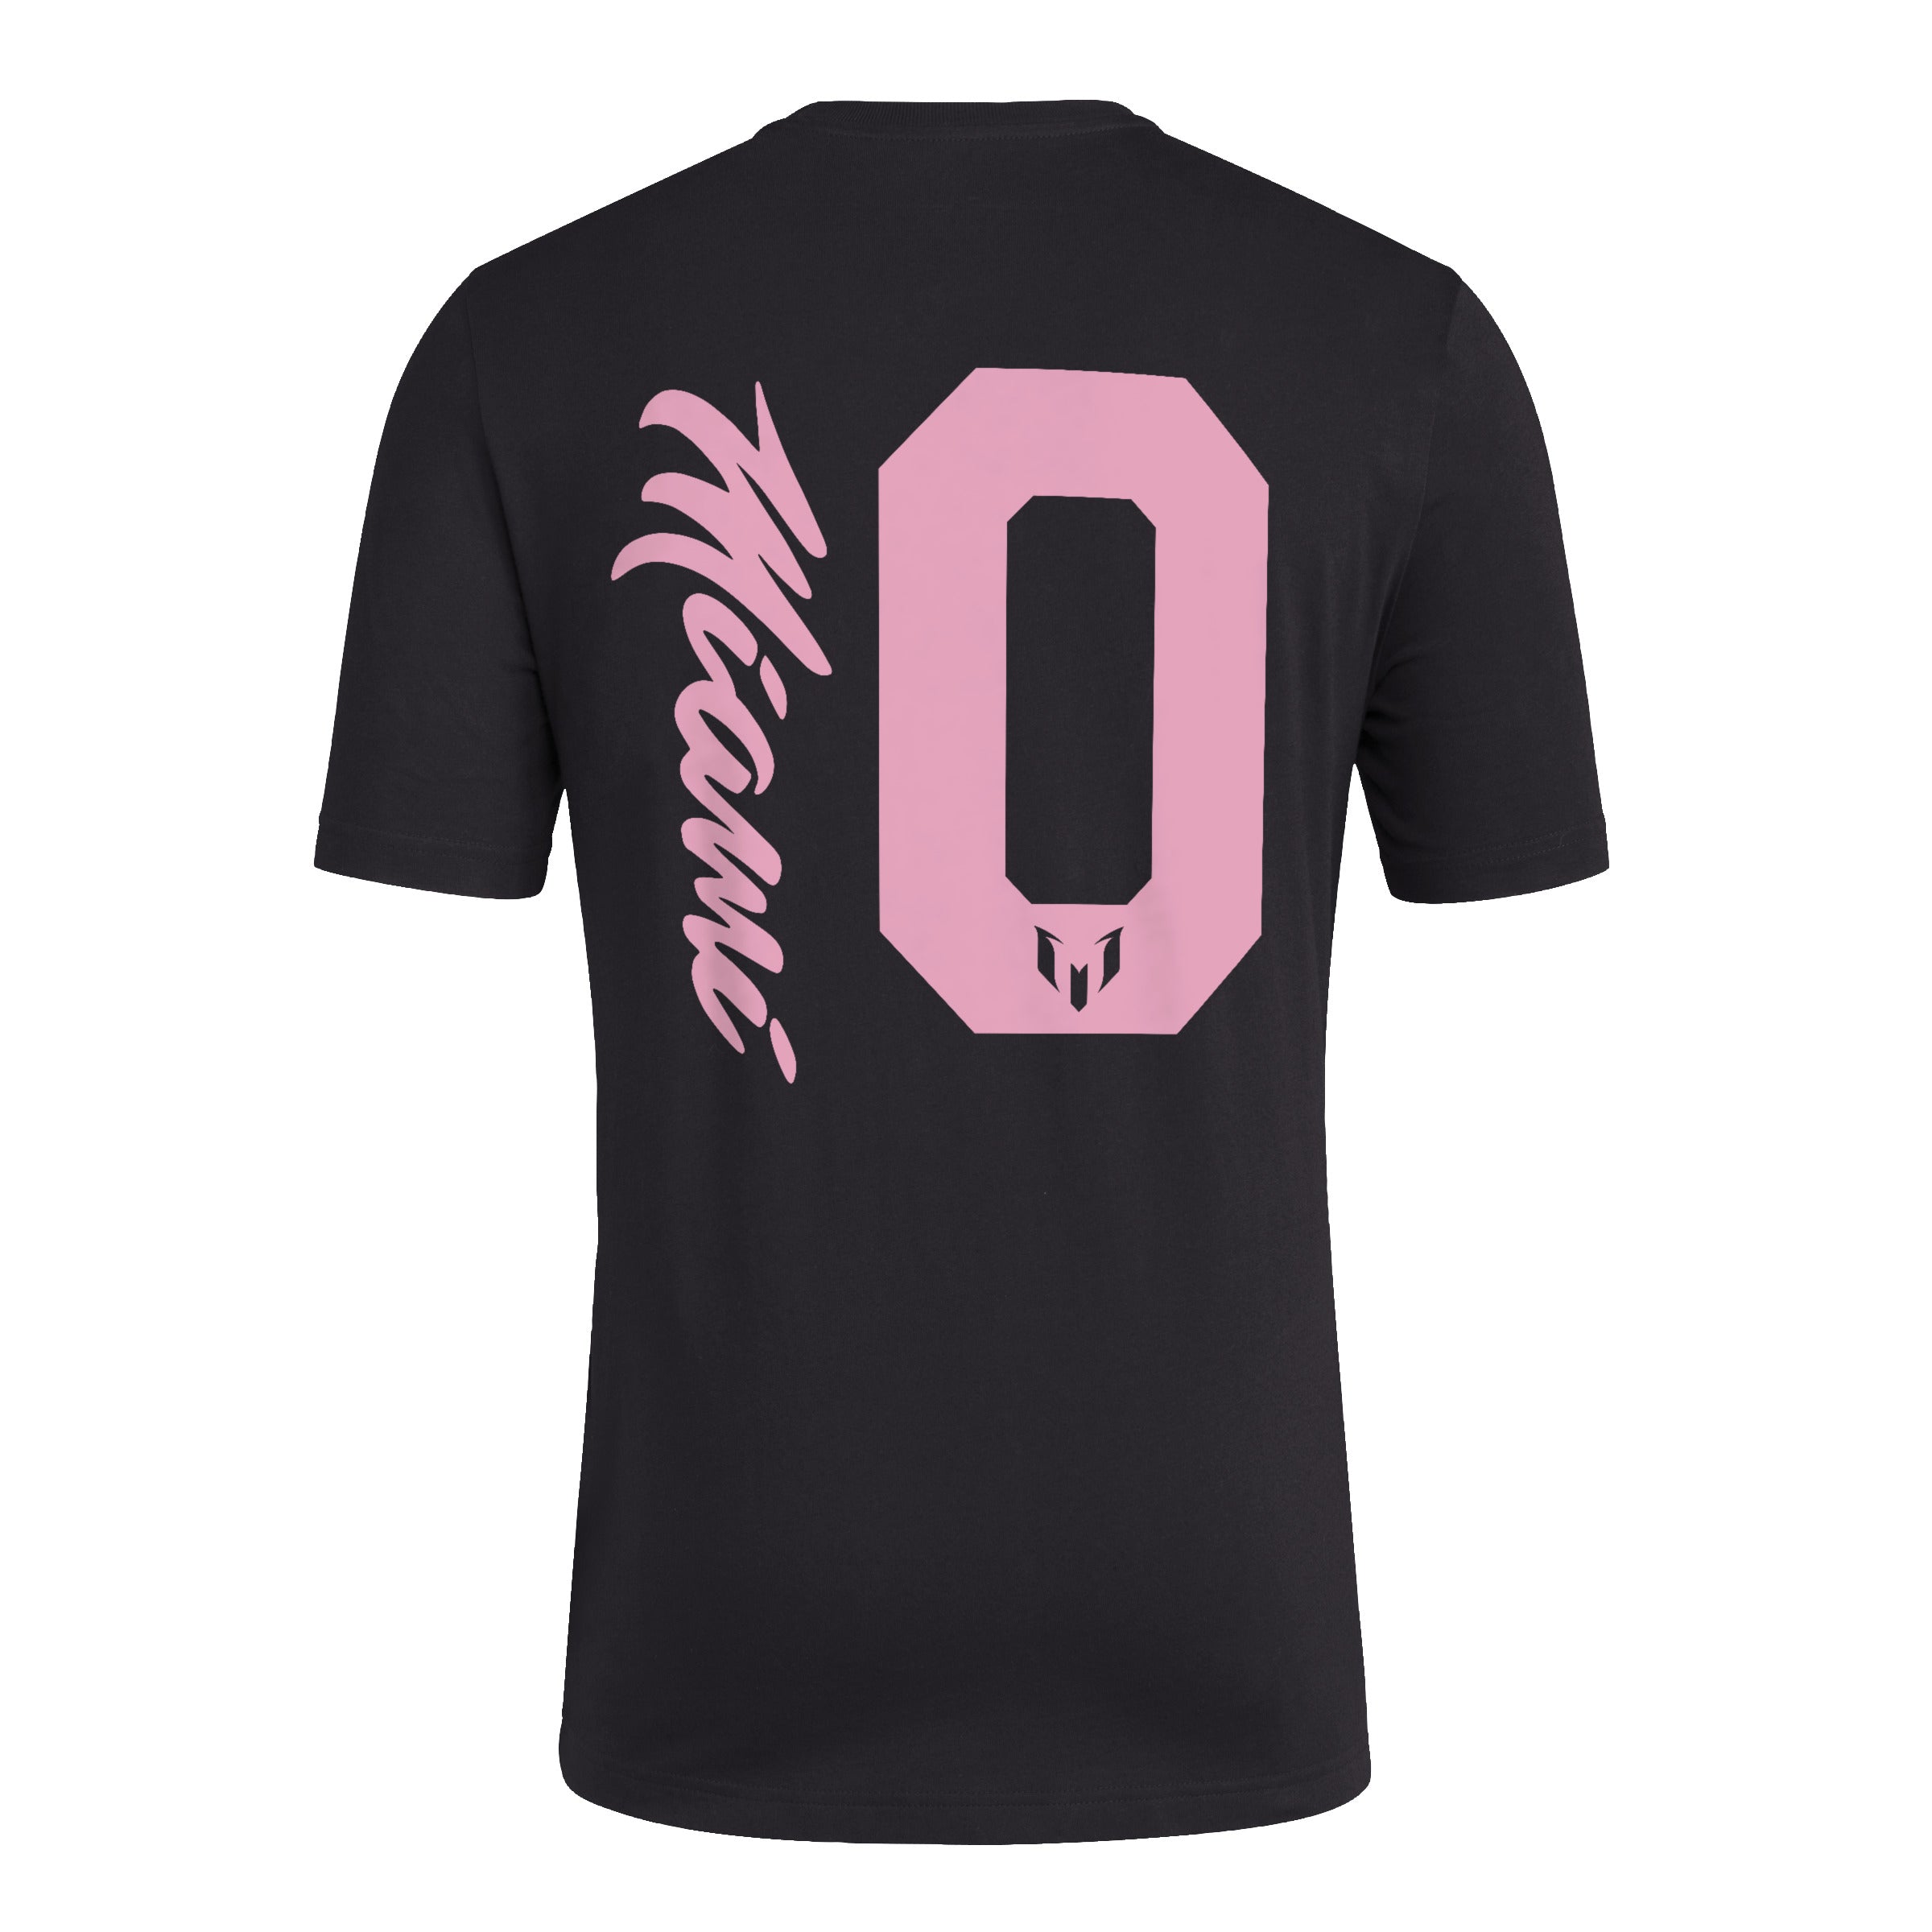 Lionel Messi x adidas Miami 10 Fresh T-Shirt - Black